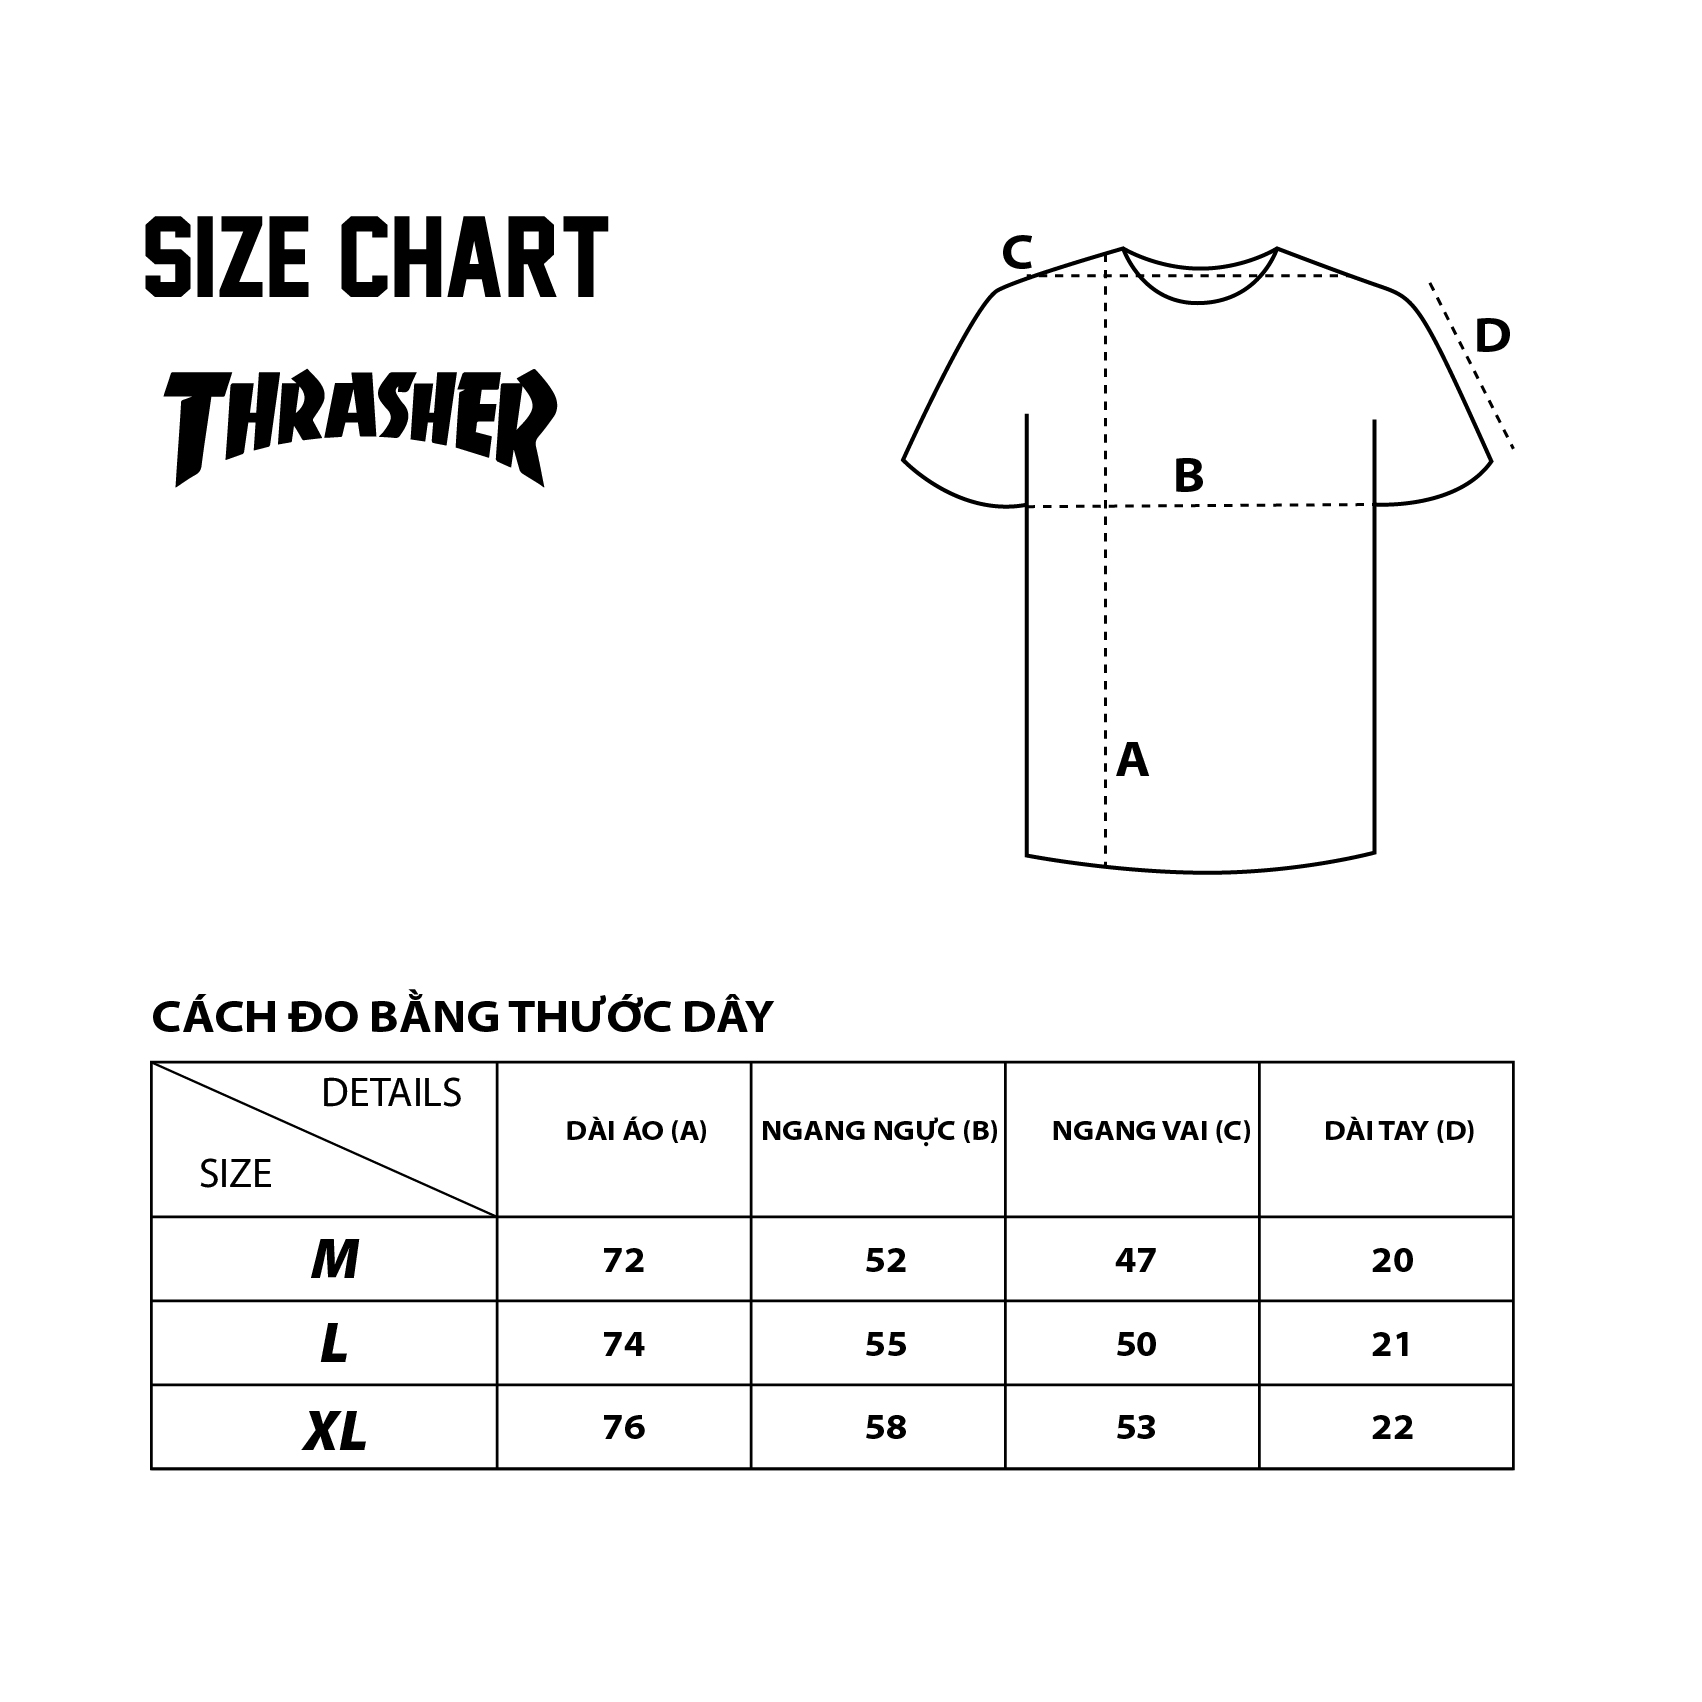 Thrasher Outlined T-Shirt - Black